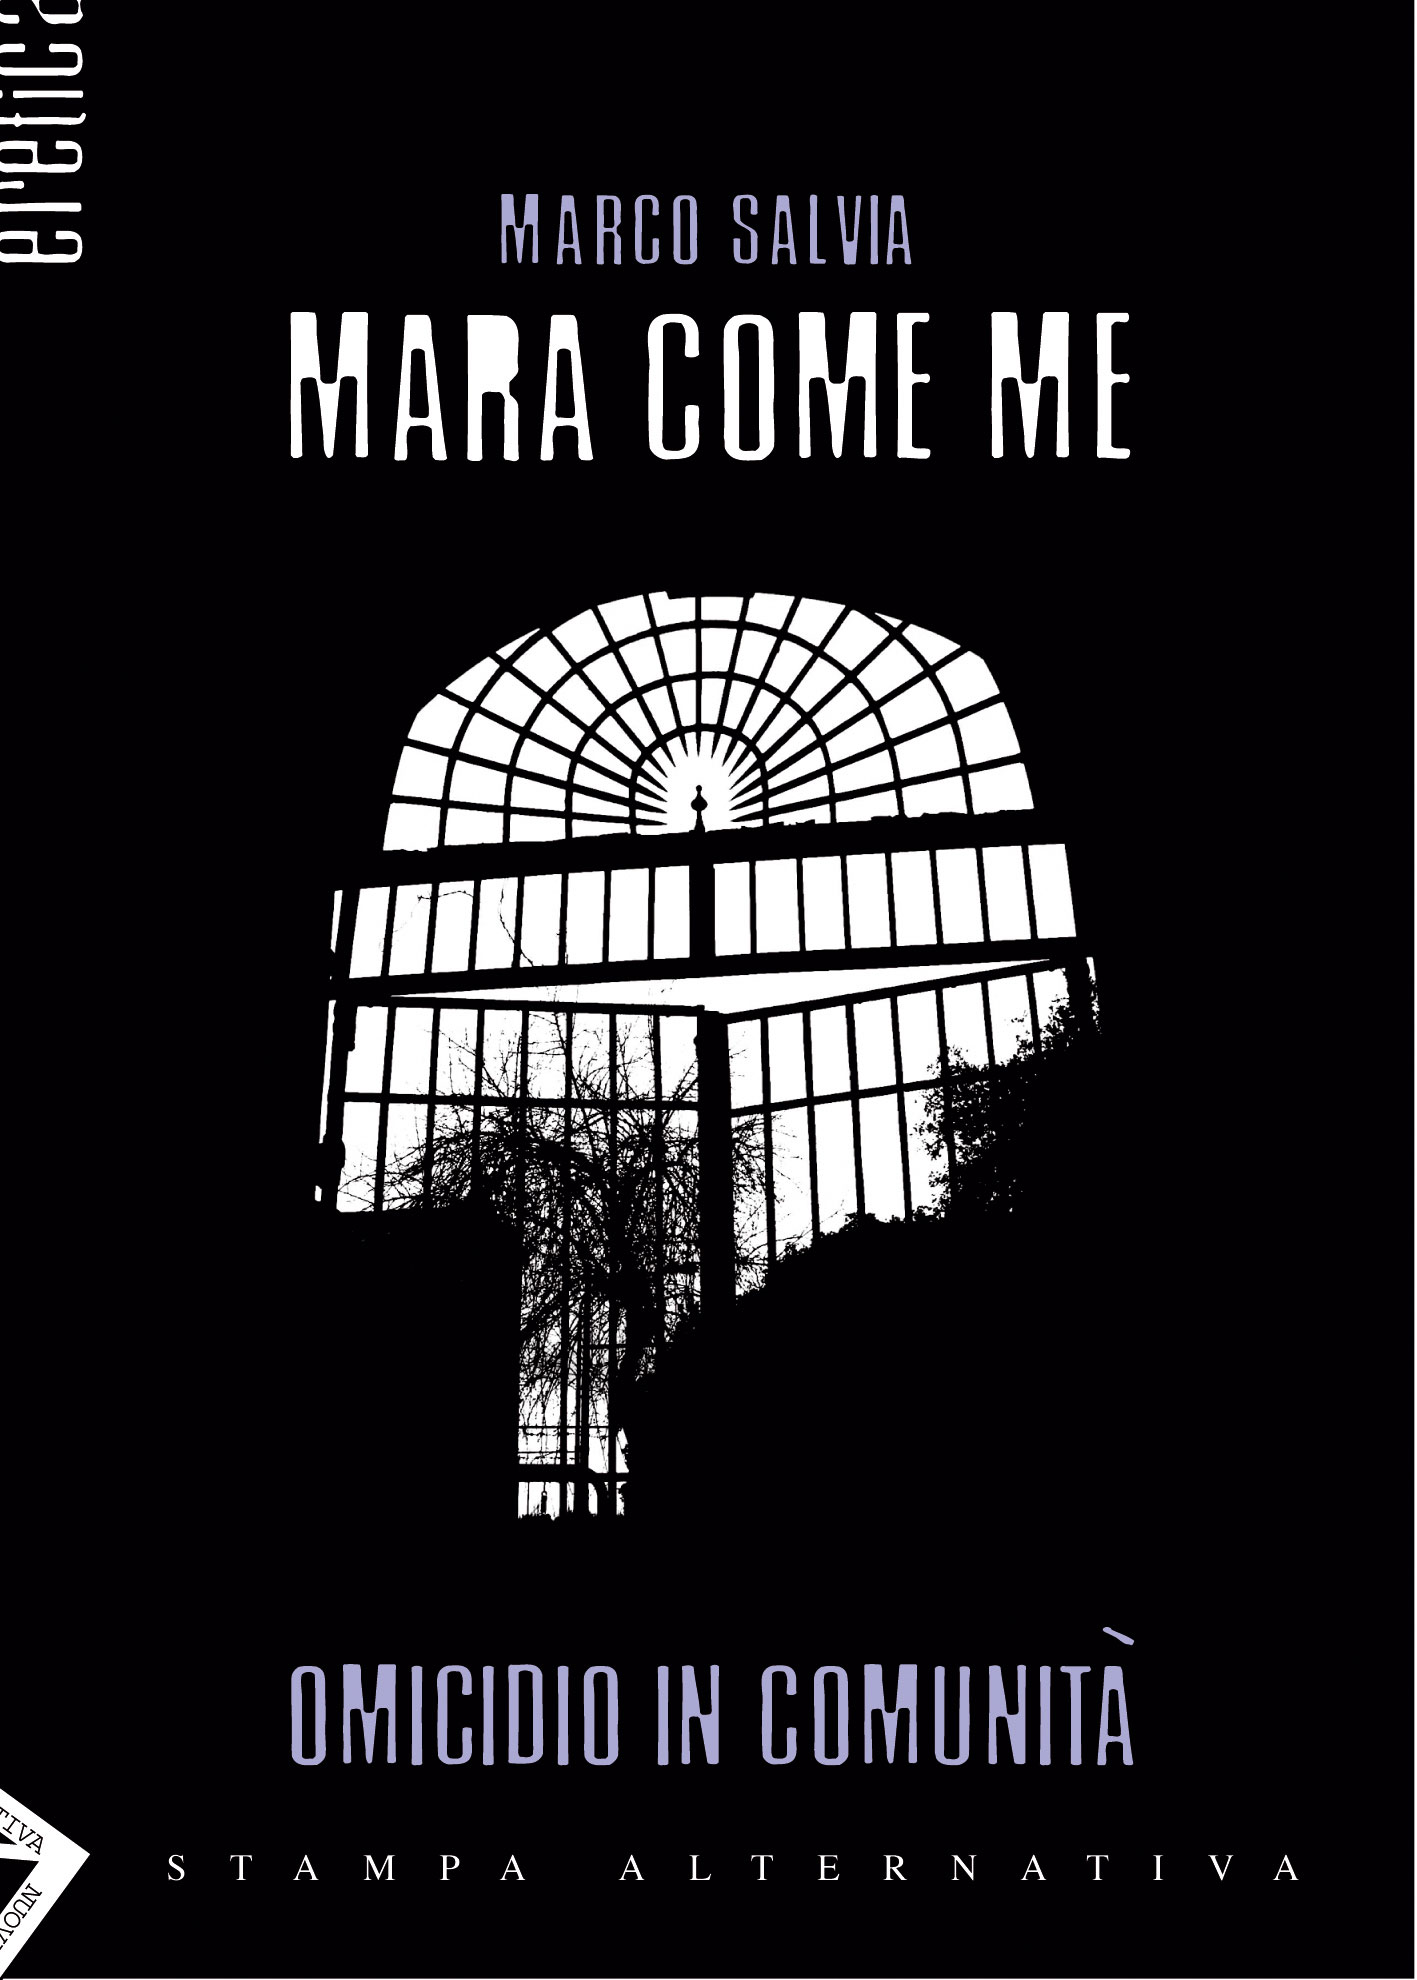 Mara come me (omicidio in comunità) – 
Un romanzo shock ambientato in una comunità di recupero per 

tossicodipendenti